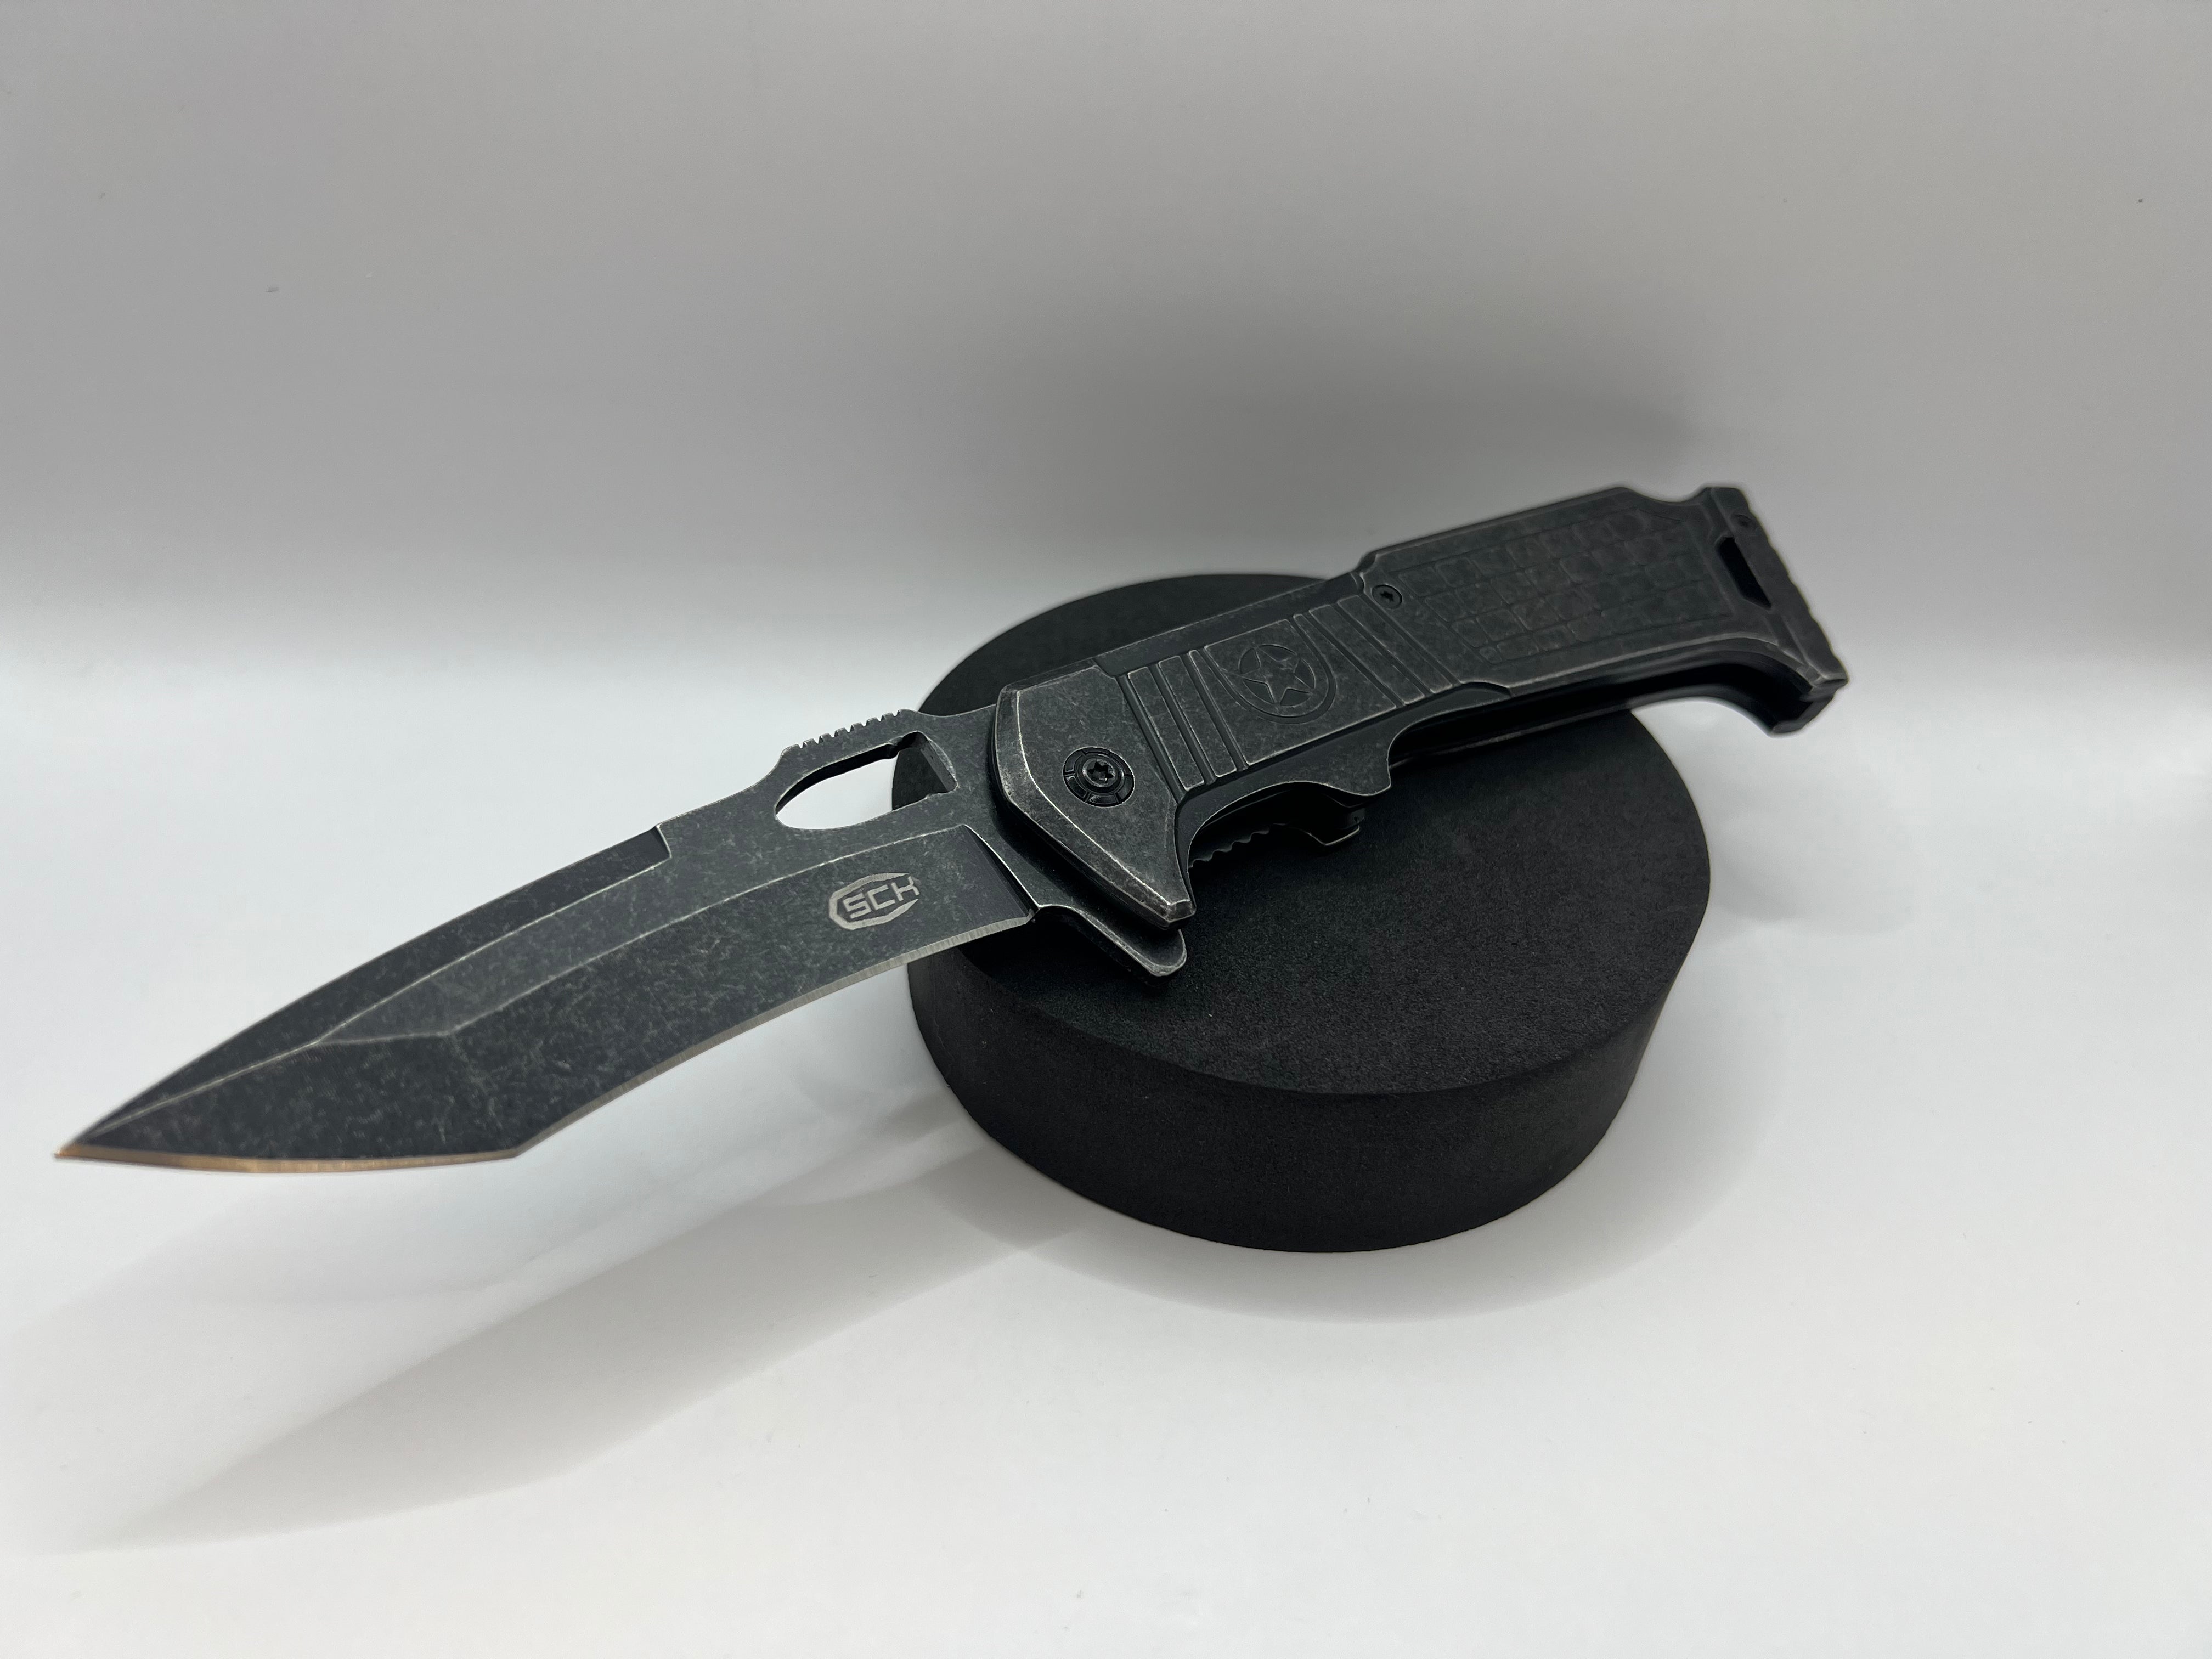 Klappbares Taschenmesser mit Federunterstützung (CW-K71)